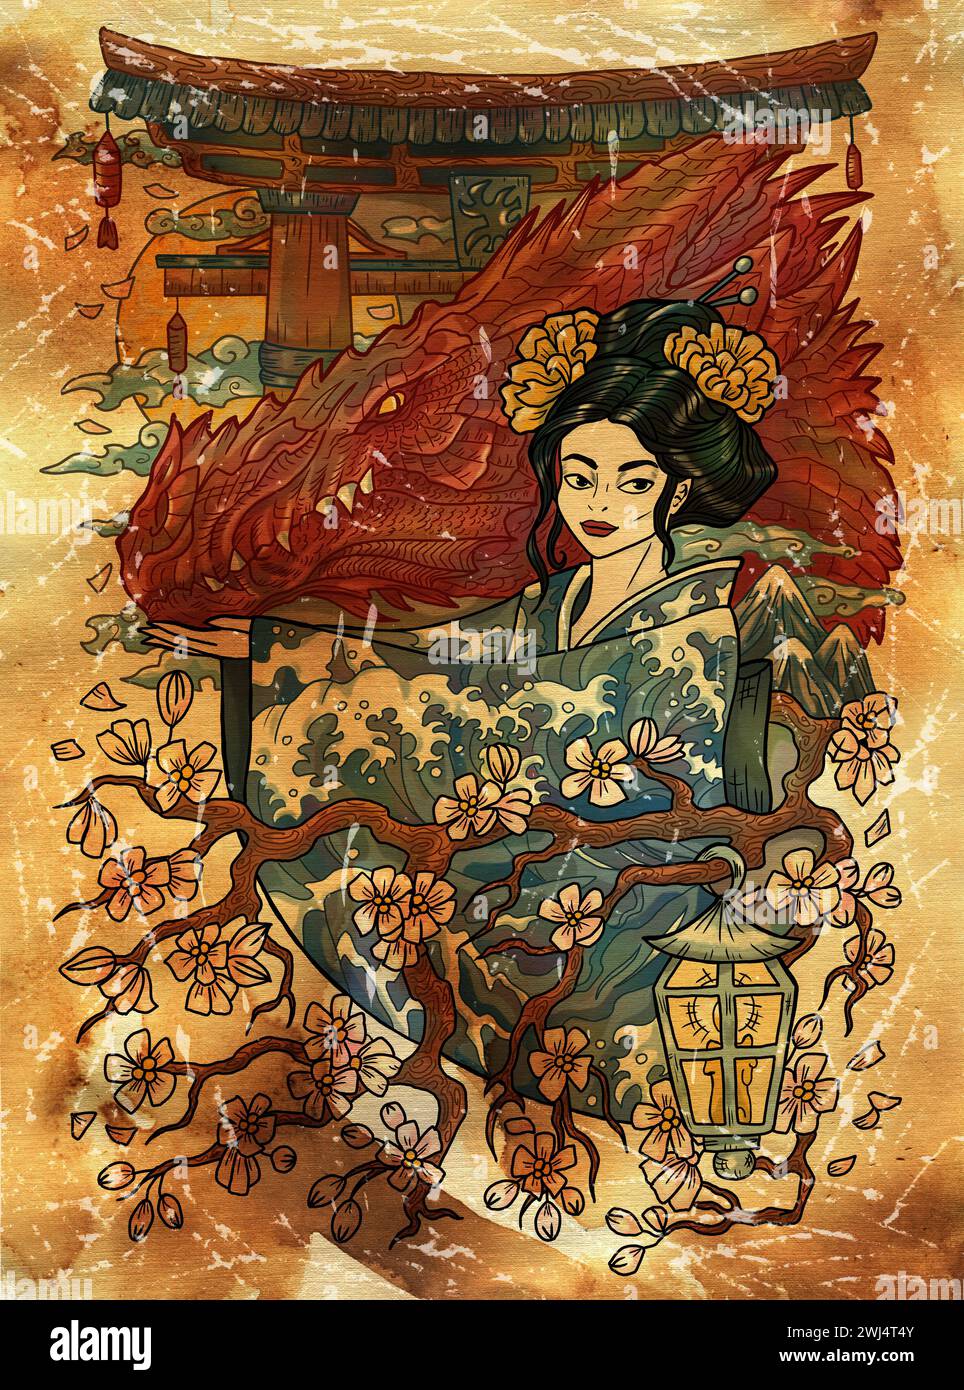 Illustration mit Fantasy-Gravur mit wunderschöner Frau als Hexe oder Magier auf strukturiertem Hintergrund. Handgezeichnete bunte Grafik mit ethnischem Konzept wie Stockfoto